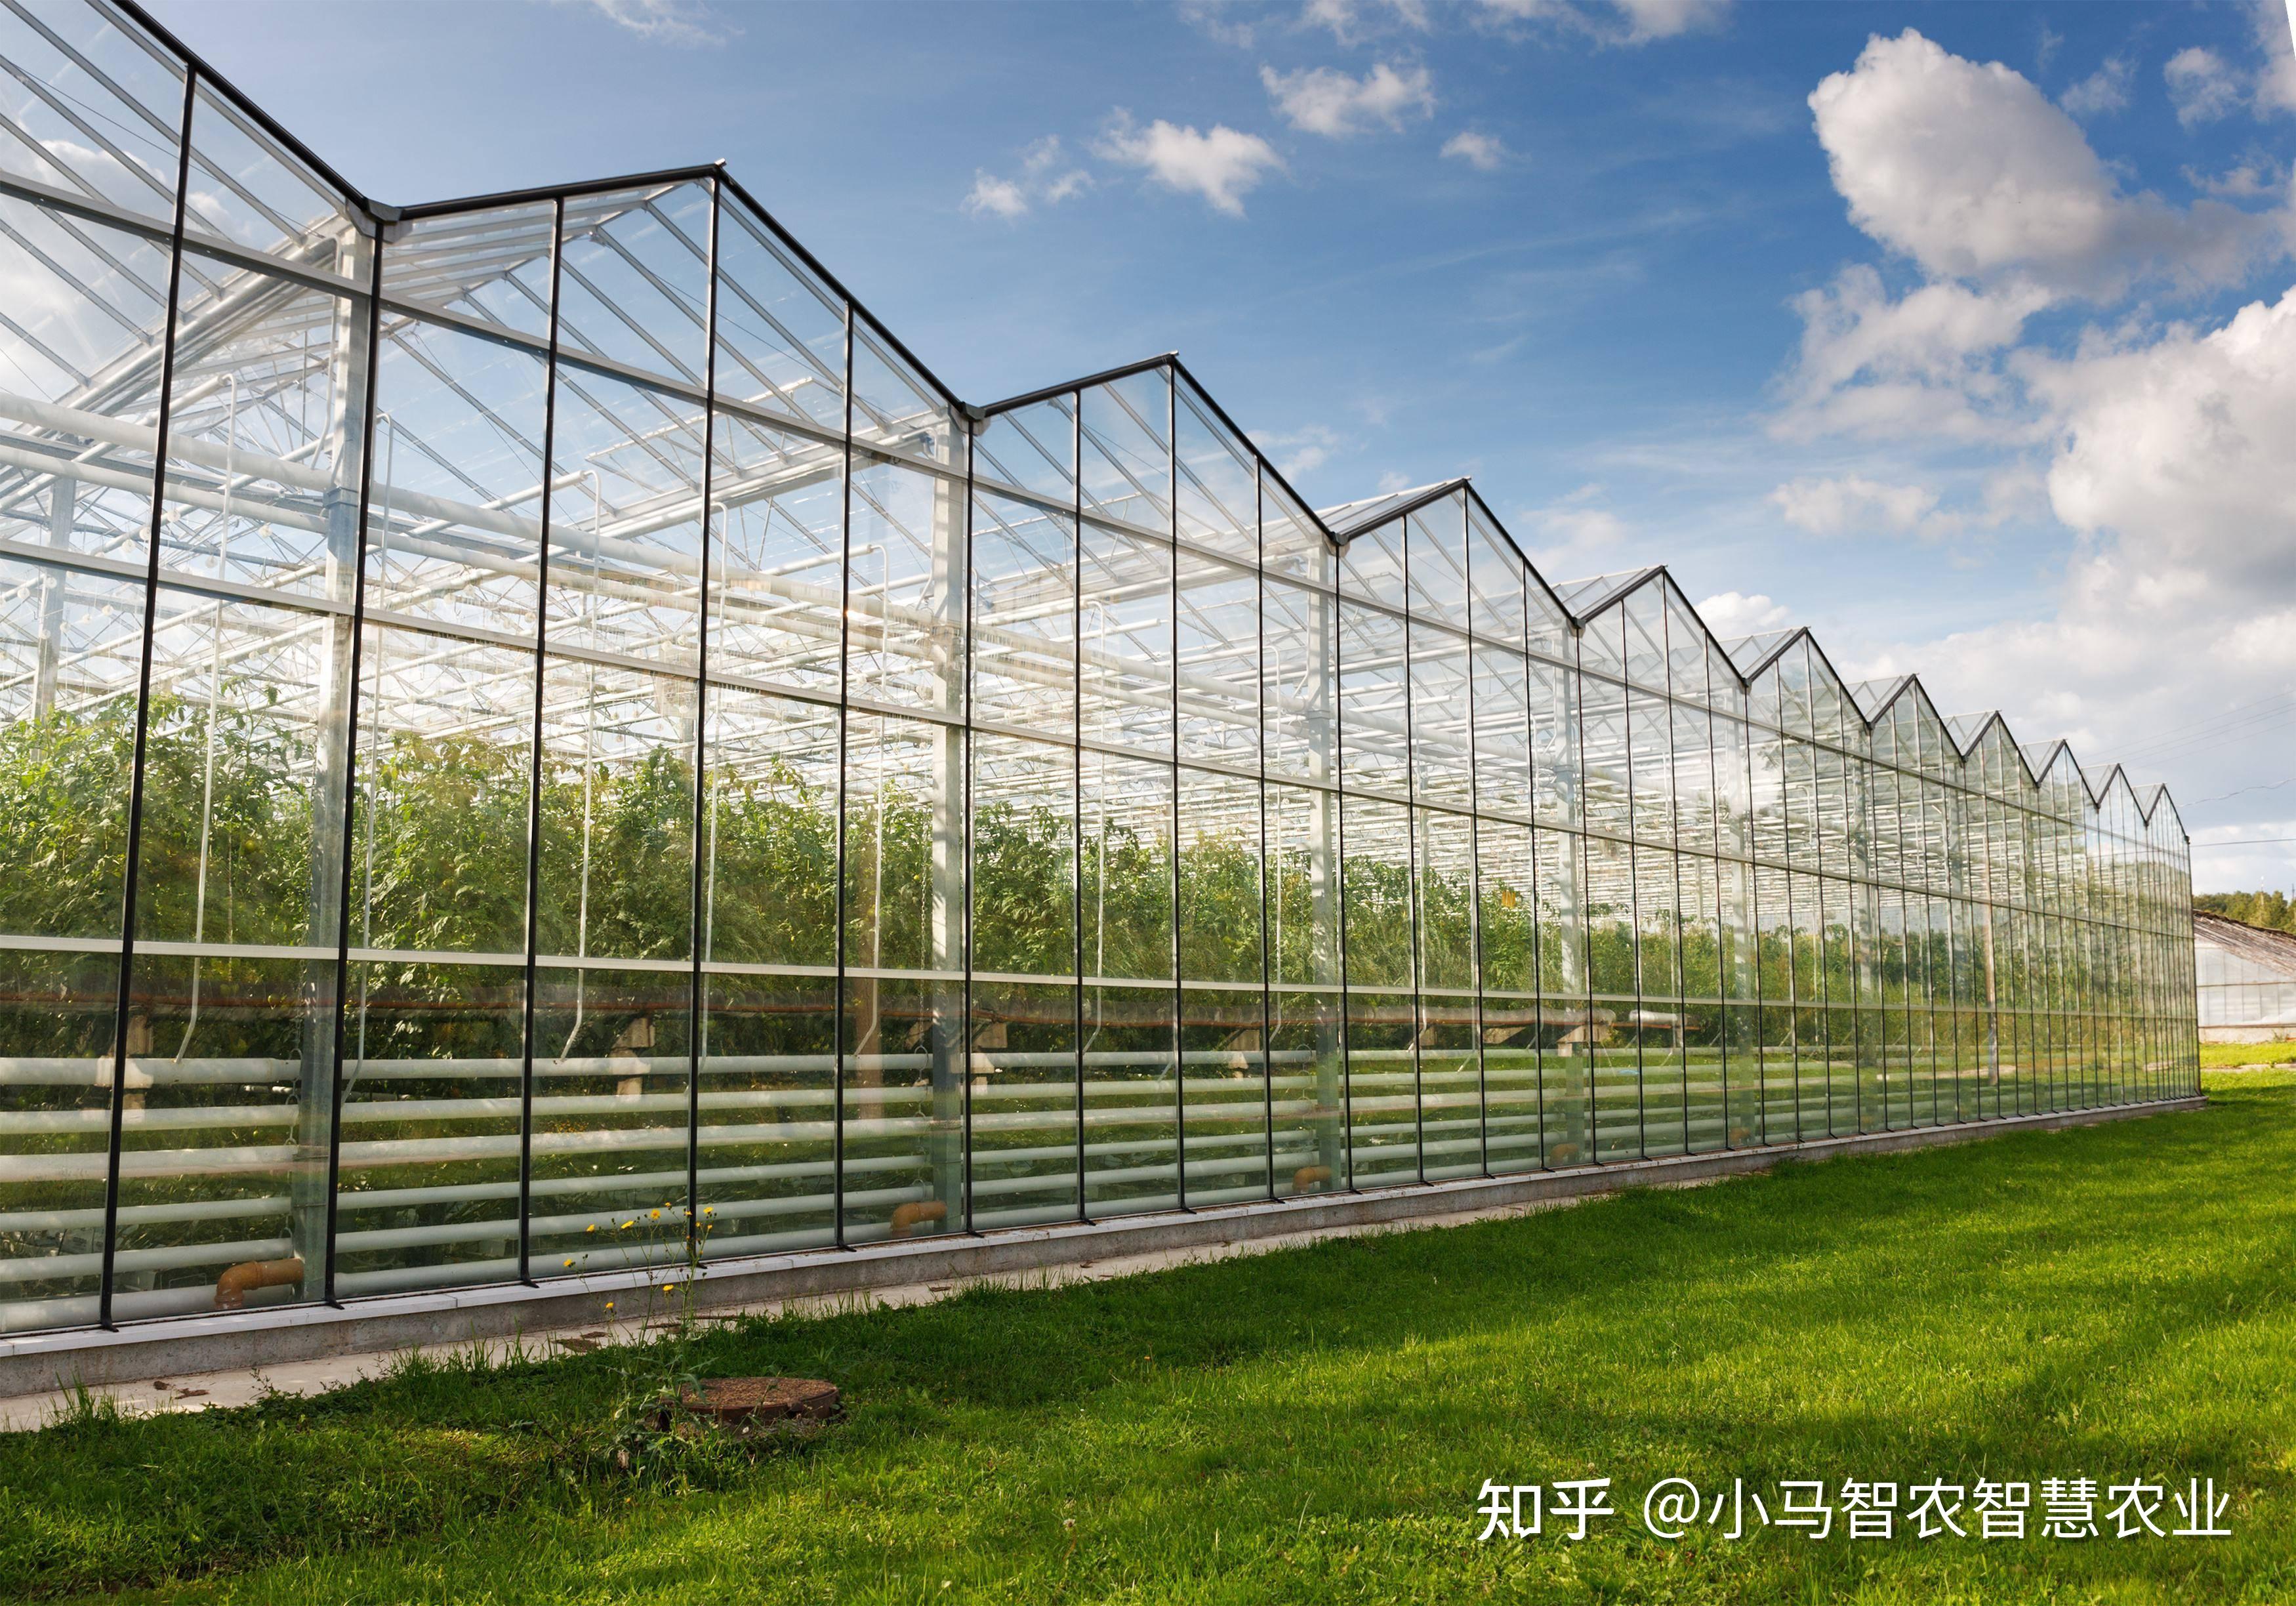 标准的玻璃温室大棚主体框架上面包含哪些系统配套设施 - 知乎